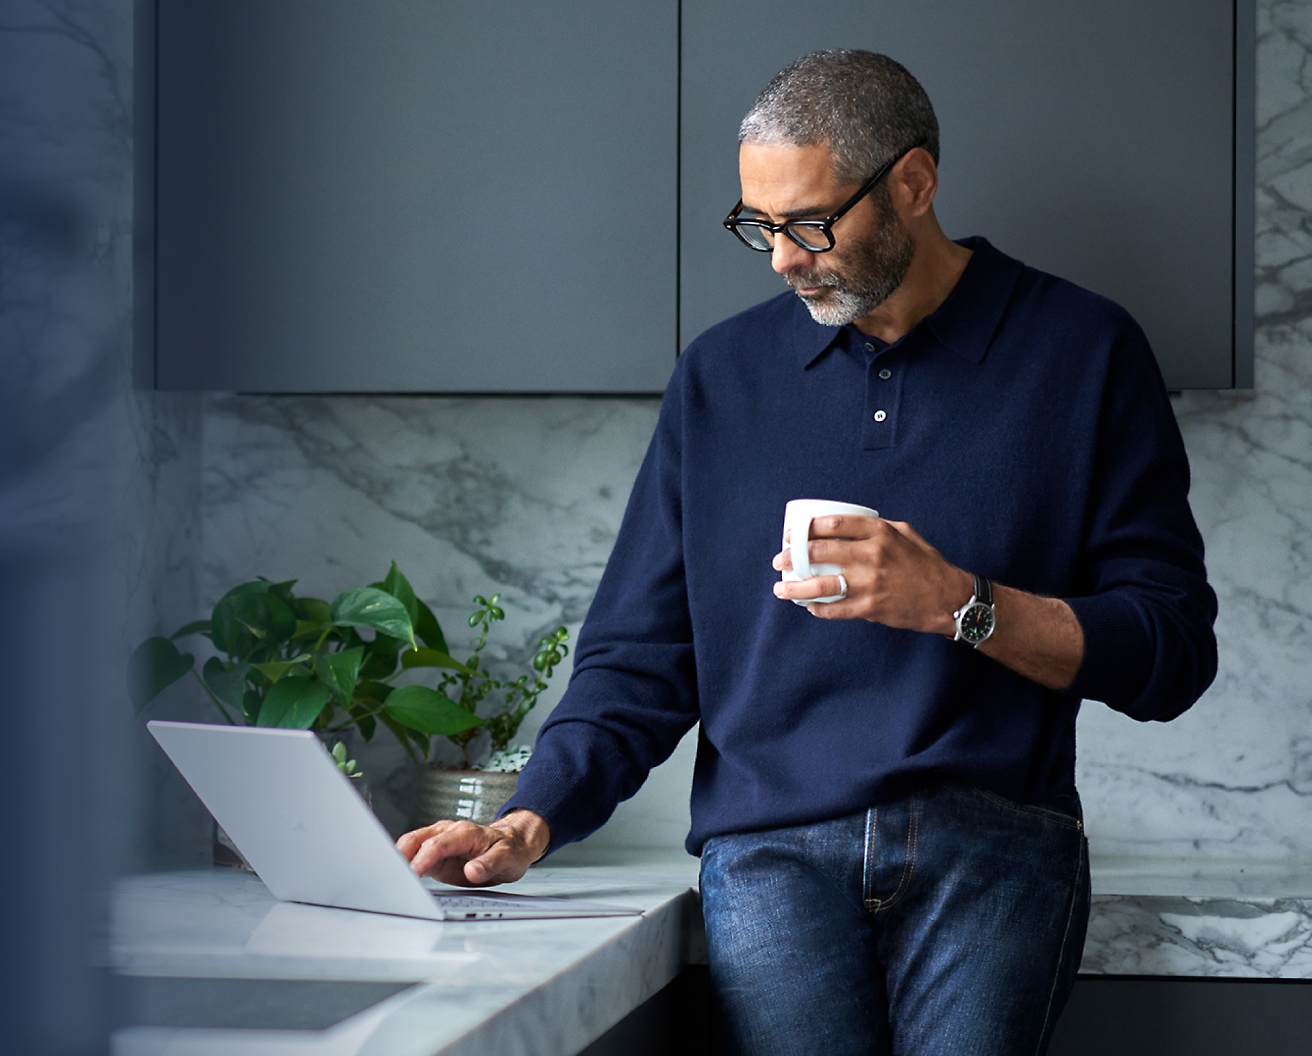 Ein Mann mittleren Alters mit Brille und blauem Pulli in einer modernen Küche, der einen Laptop benutzt und eine Kaffeetasse hält